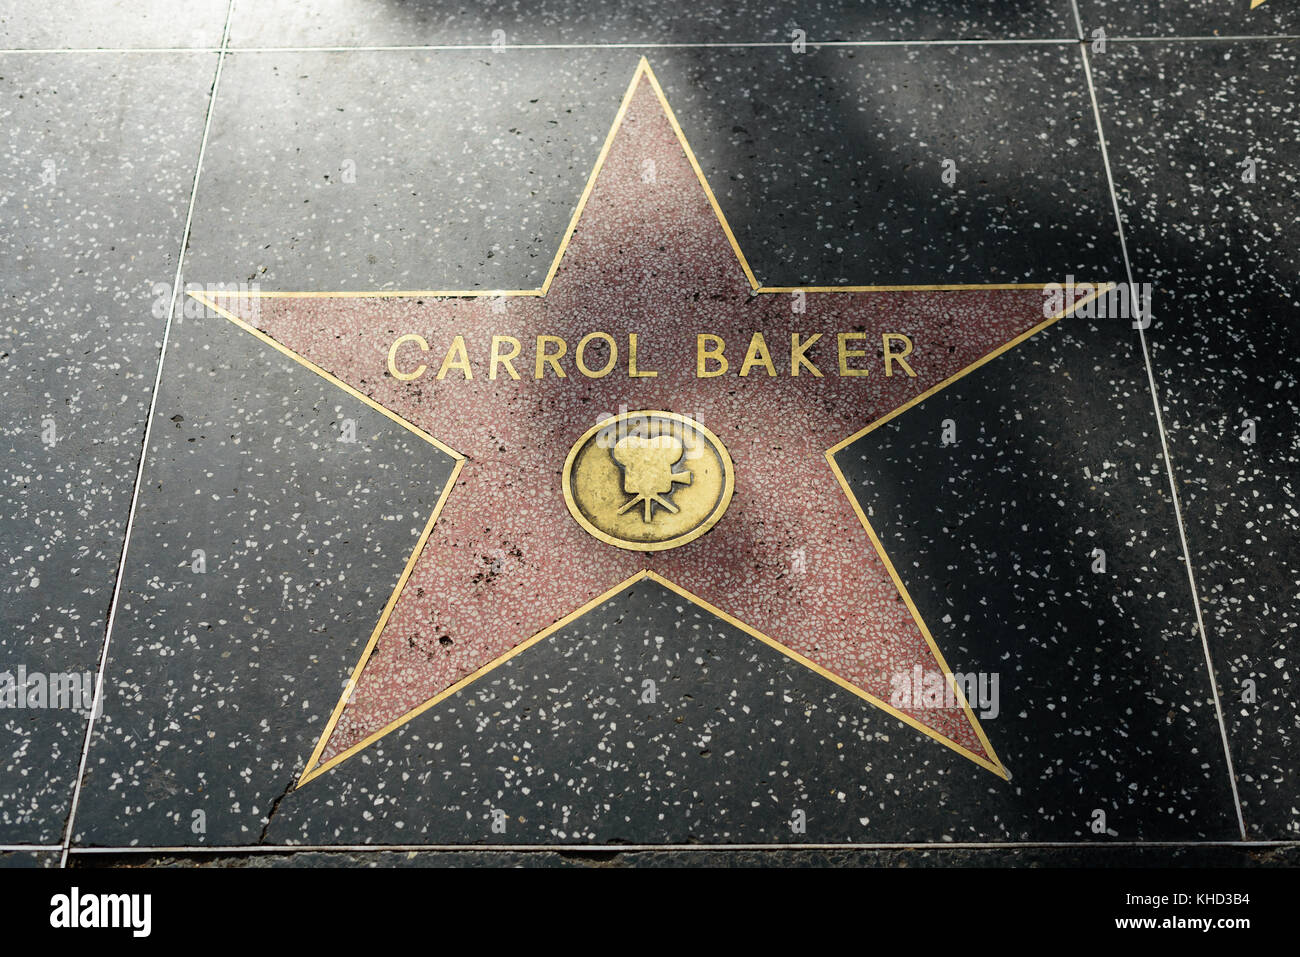 HOLLYWOOD, CA - DÉCEMBRE 06 : Carol Baker star sur le Hollywood Walk of Fame à Hollywood, Californie, le 6 décembre 2016. Banque D'Images